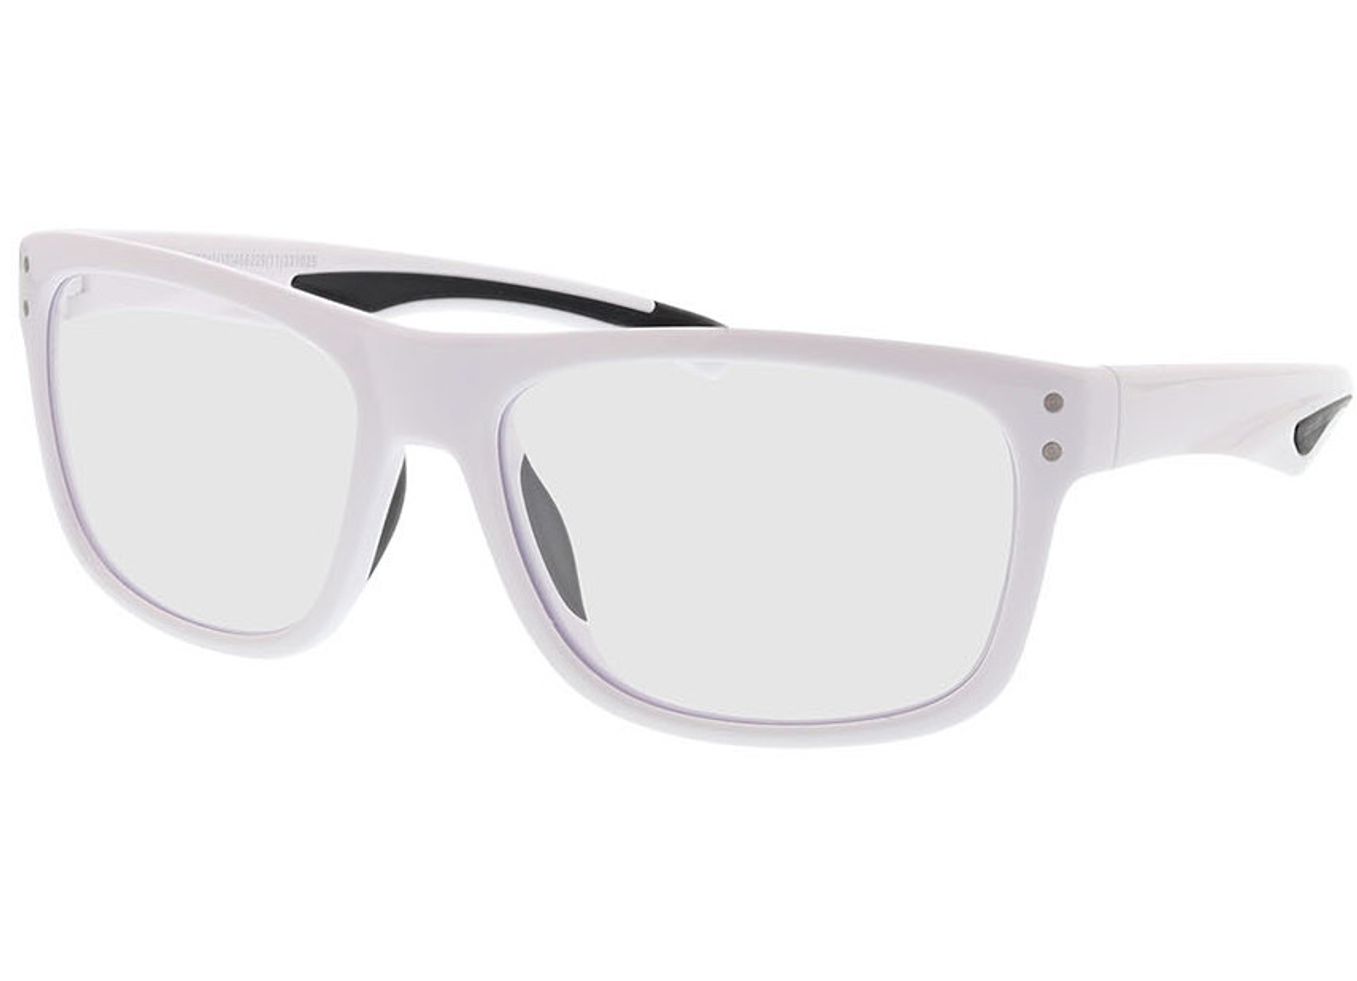 Pace - weiß/schwarz Gleitsichtbrille, Vollrand, Rechteckig von Active by Brille24